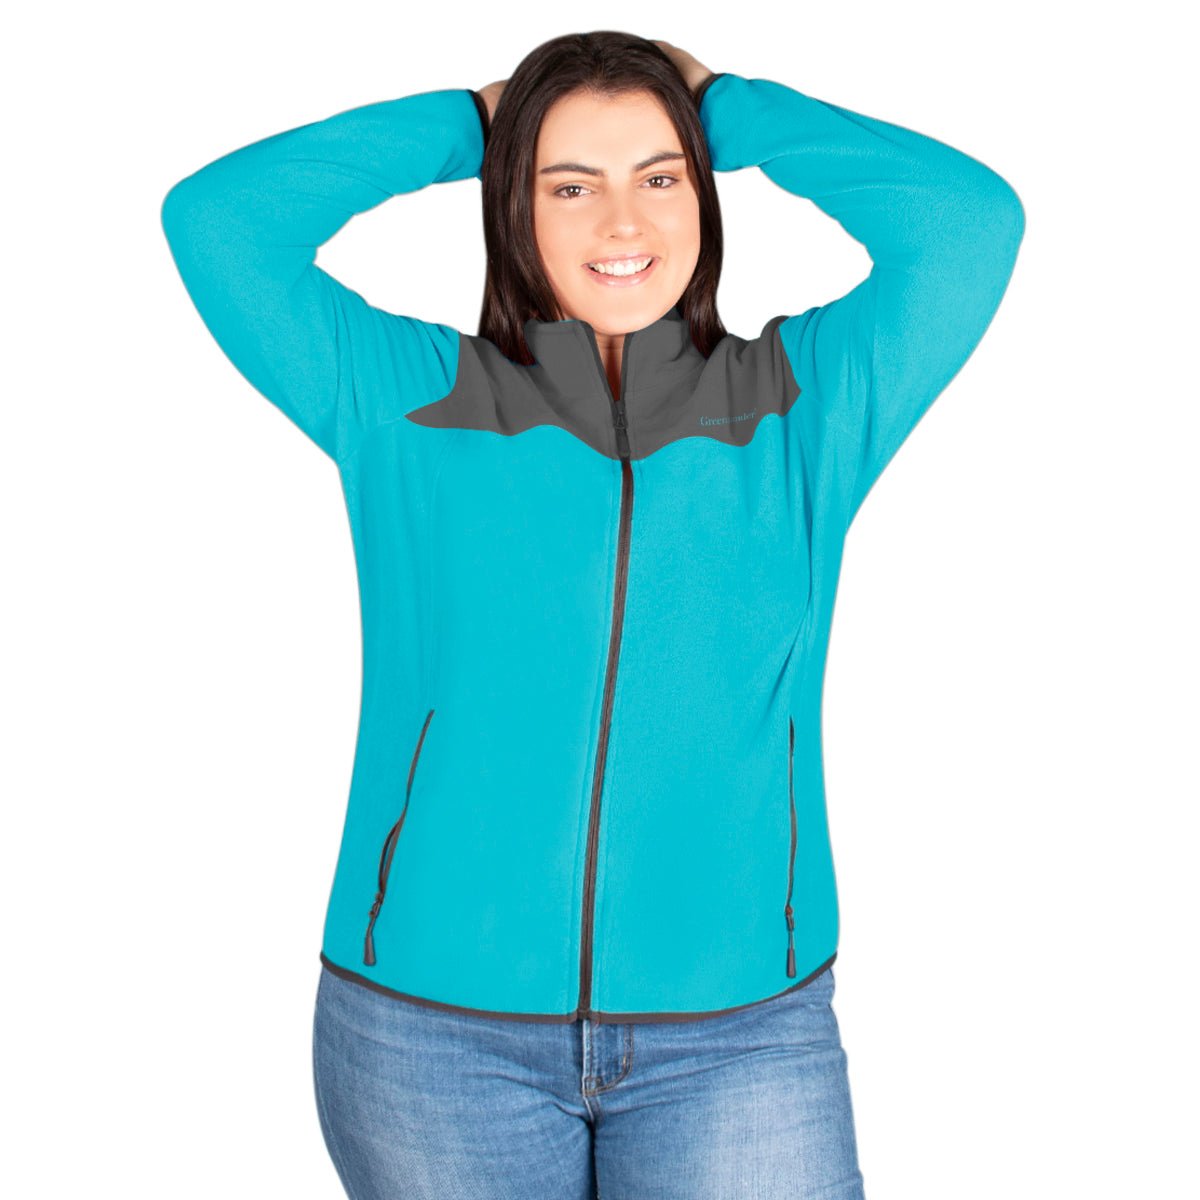 Chamarra Fleece Comfort Plus Size Mujer - The Original Greenlander